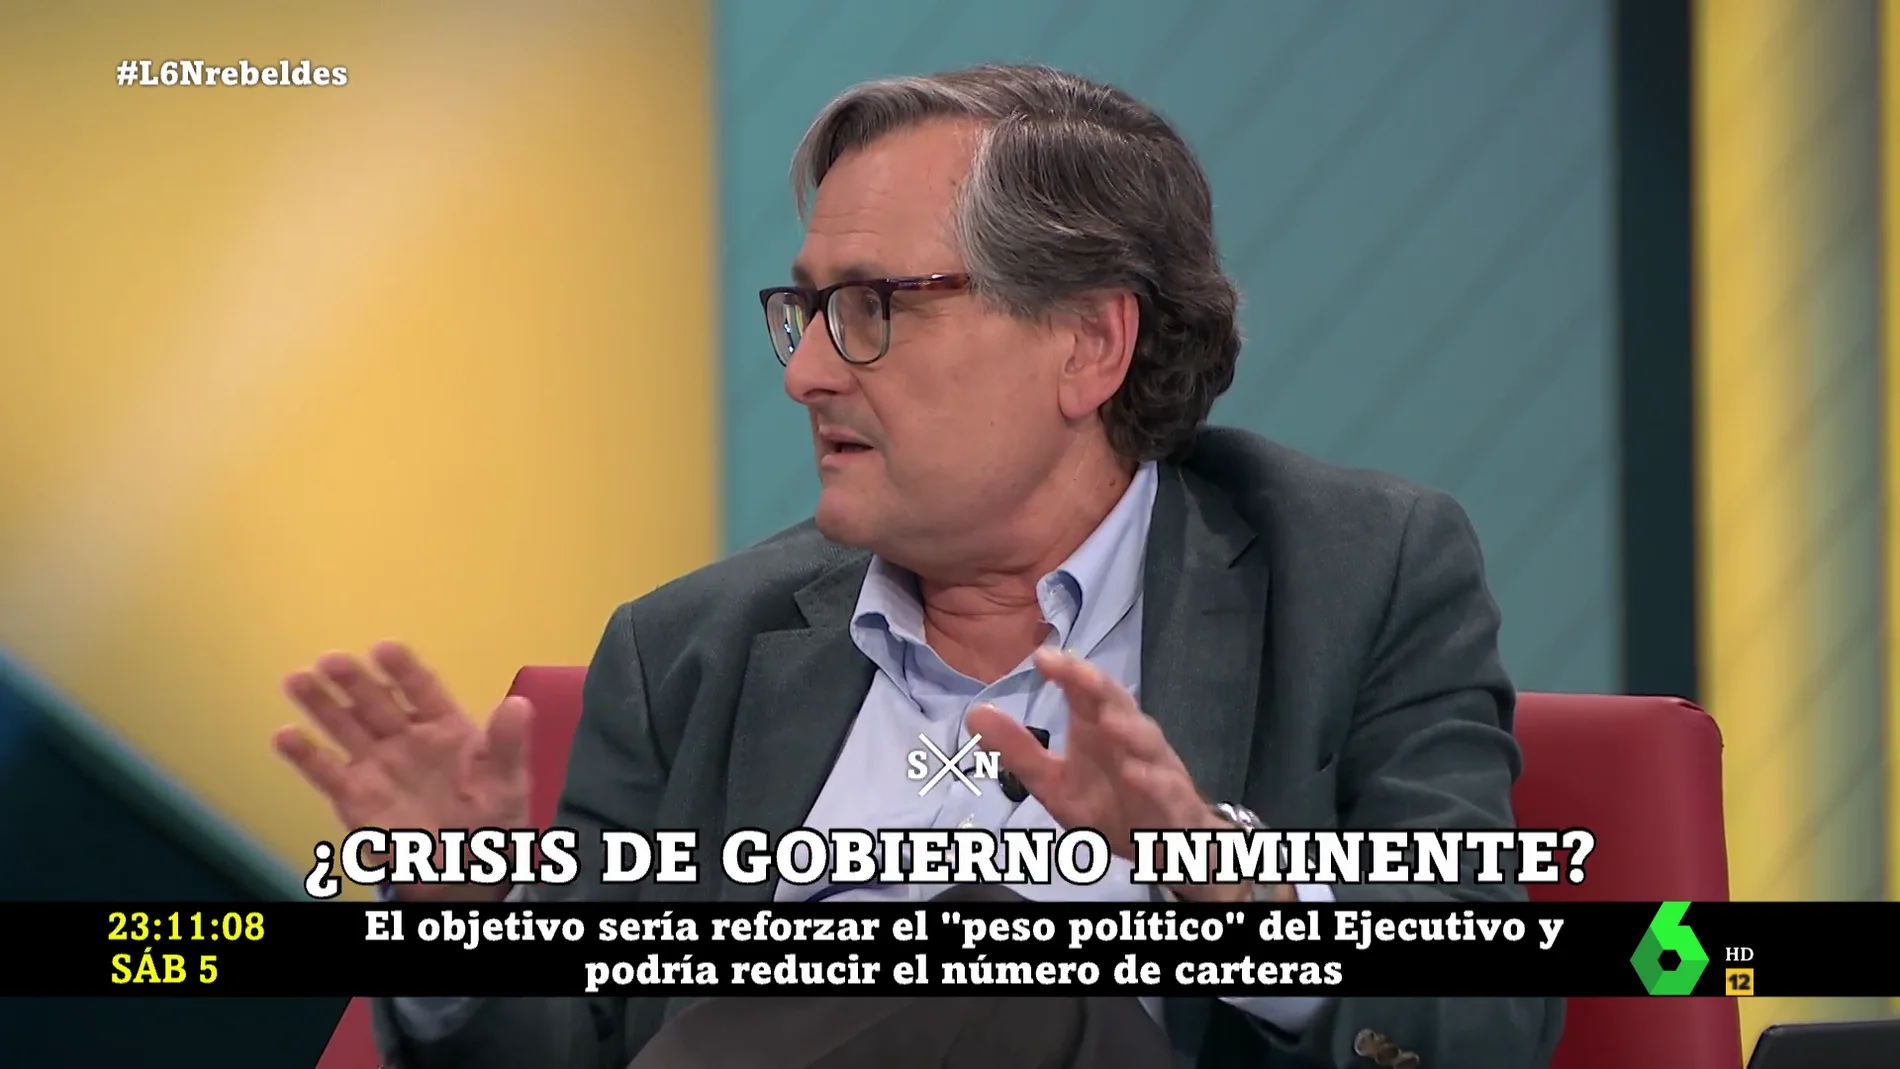 El pronóstico de Paco Marhuenda de los posibles cambios en el "nuevo Gobierno" de Pedro Sánchez